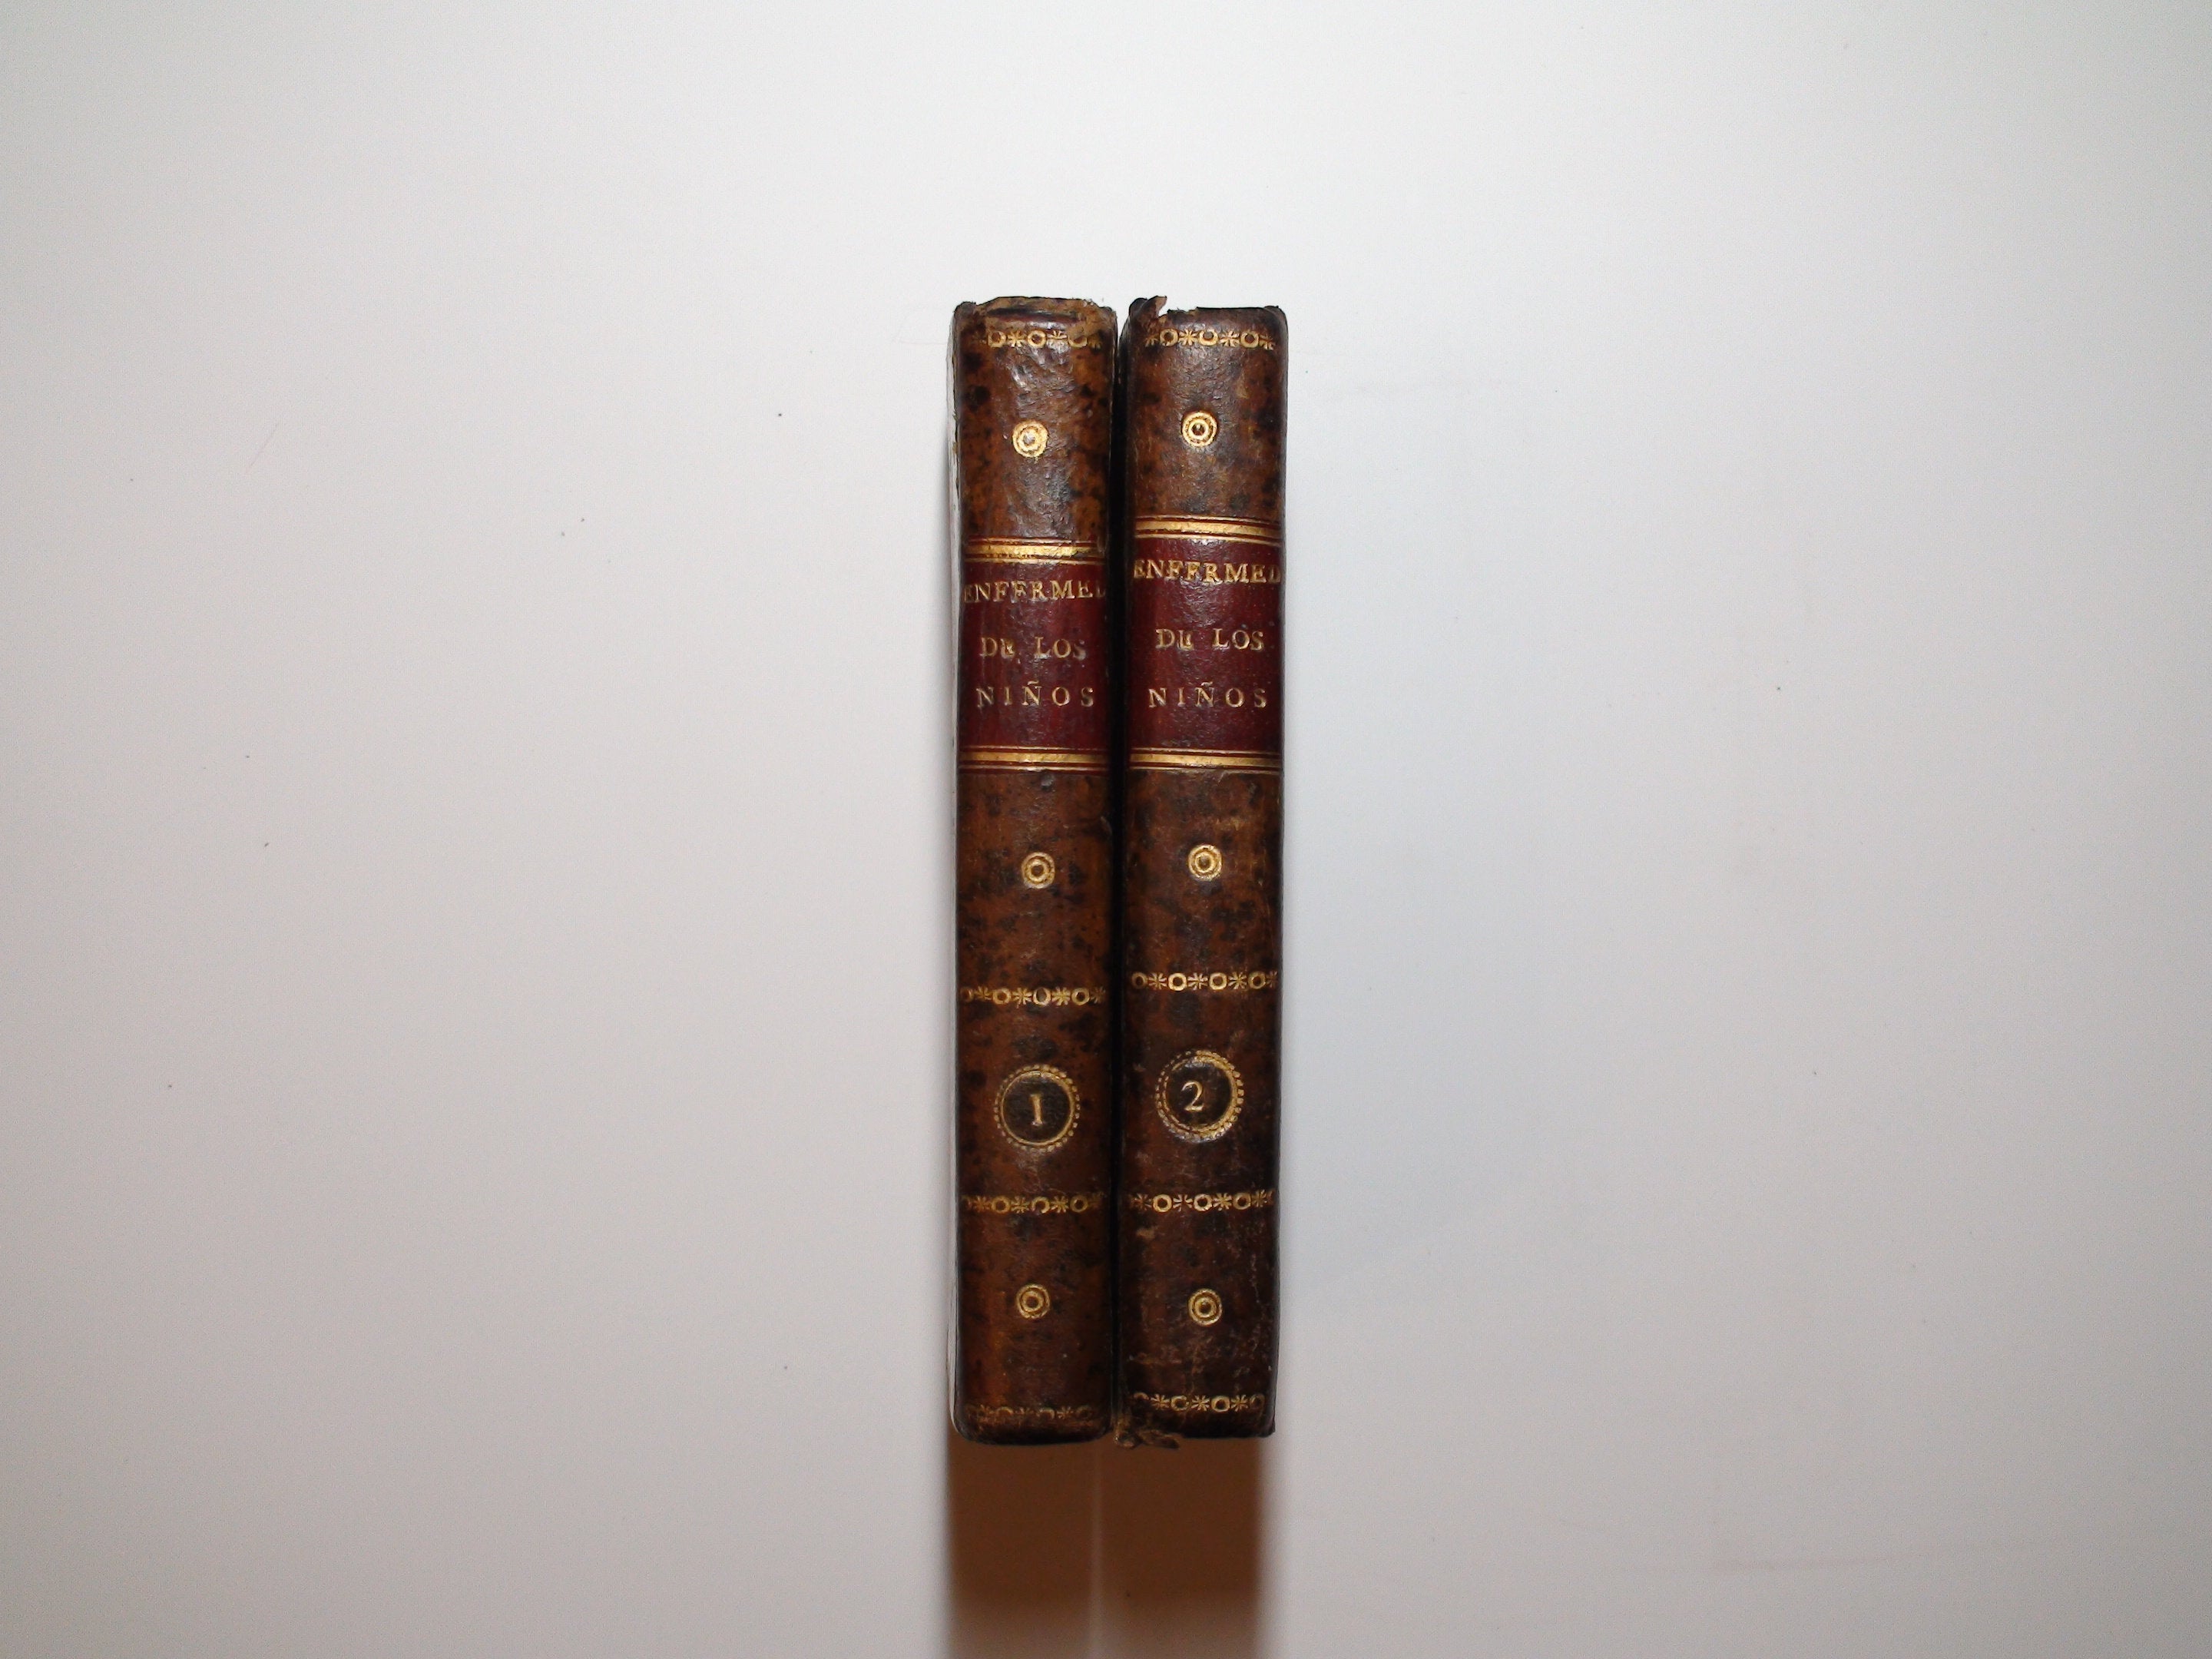 Tratado De Las Enfermedades De Los Niños Hasta la Pubertad, J. Capuron, c1819, Rare, 2 Vol Set